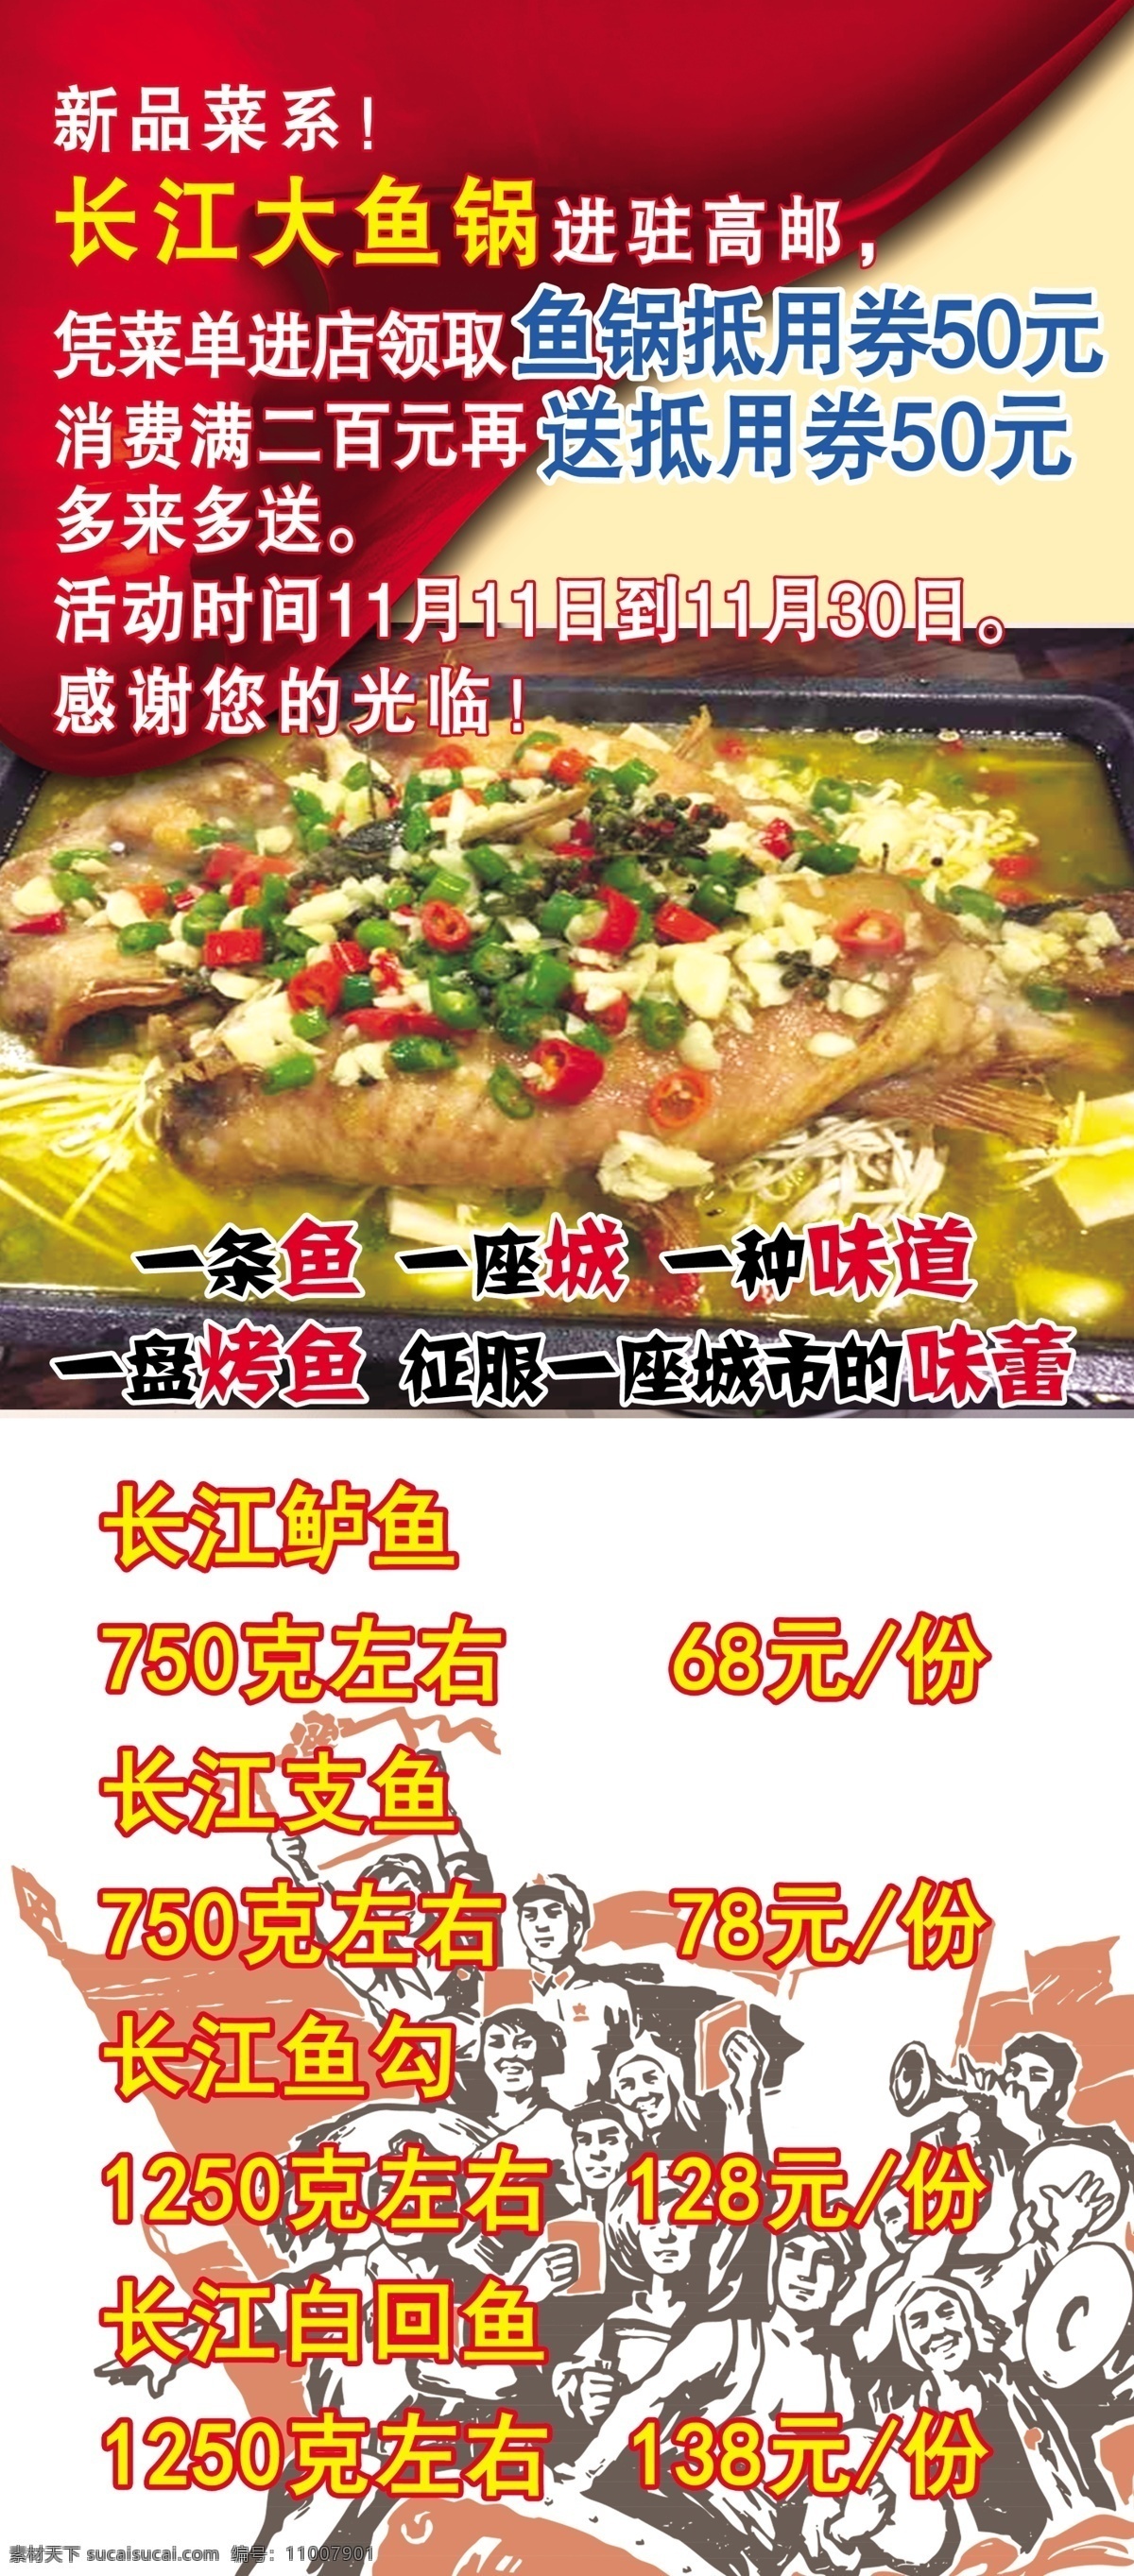 烤鱼展架 革命 长江烤鱼 新菜上市 品味人生 展板模板 白色